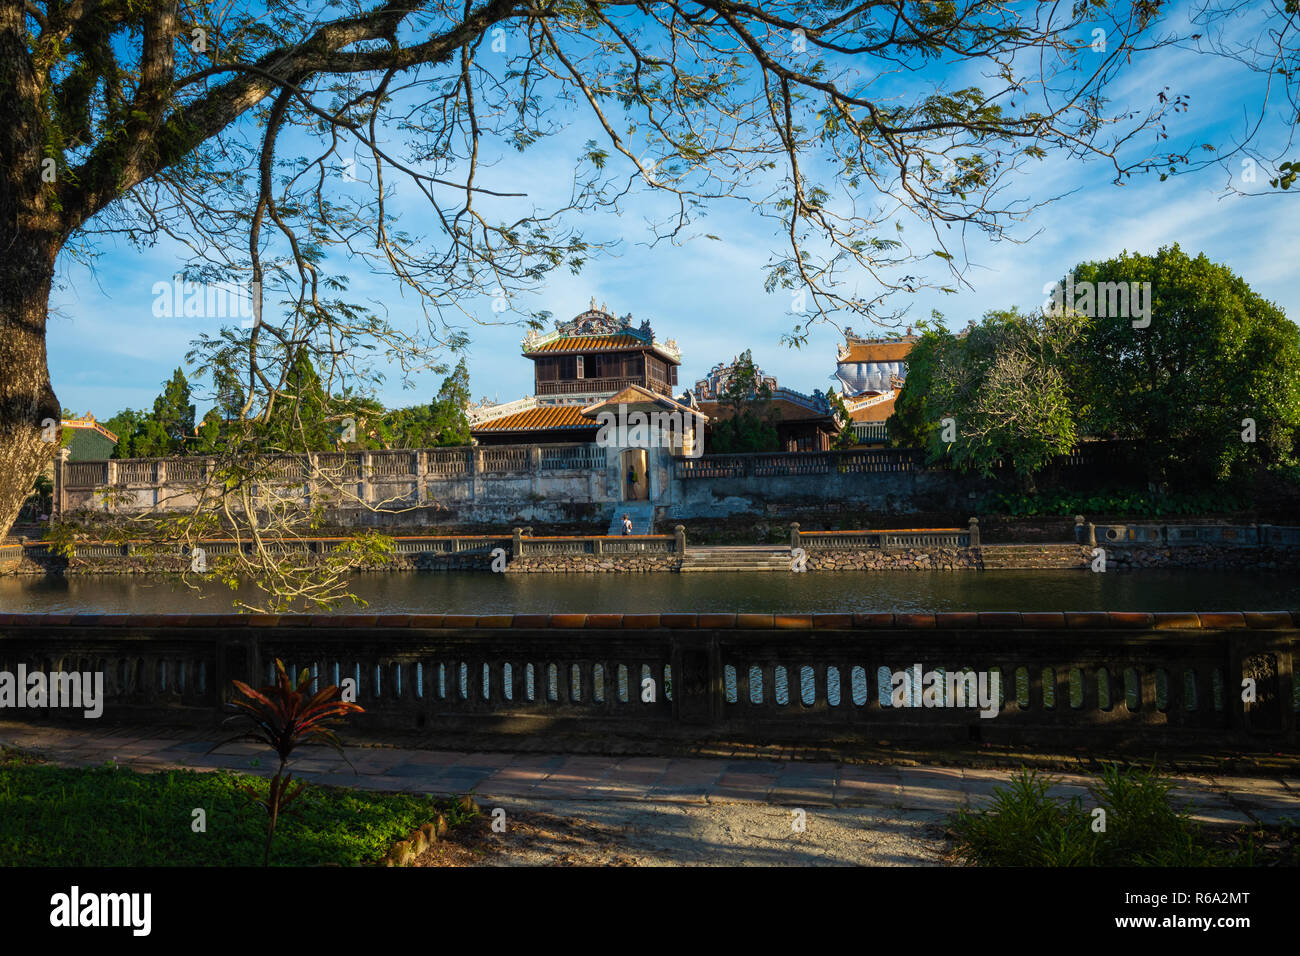 Imperial Palazzo reale della dinastia Nguyen in tinta, Vietnam. Unesco - Sito Patrimonio dell'umanità. Foto Stock